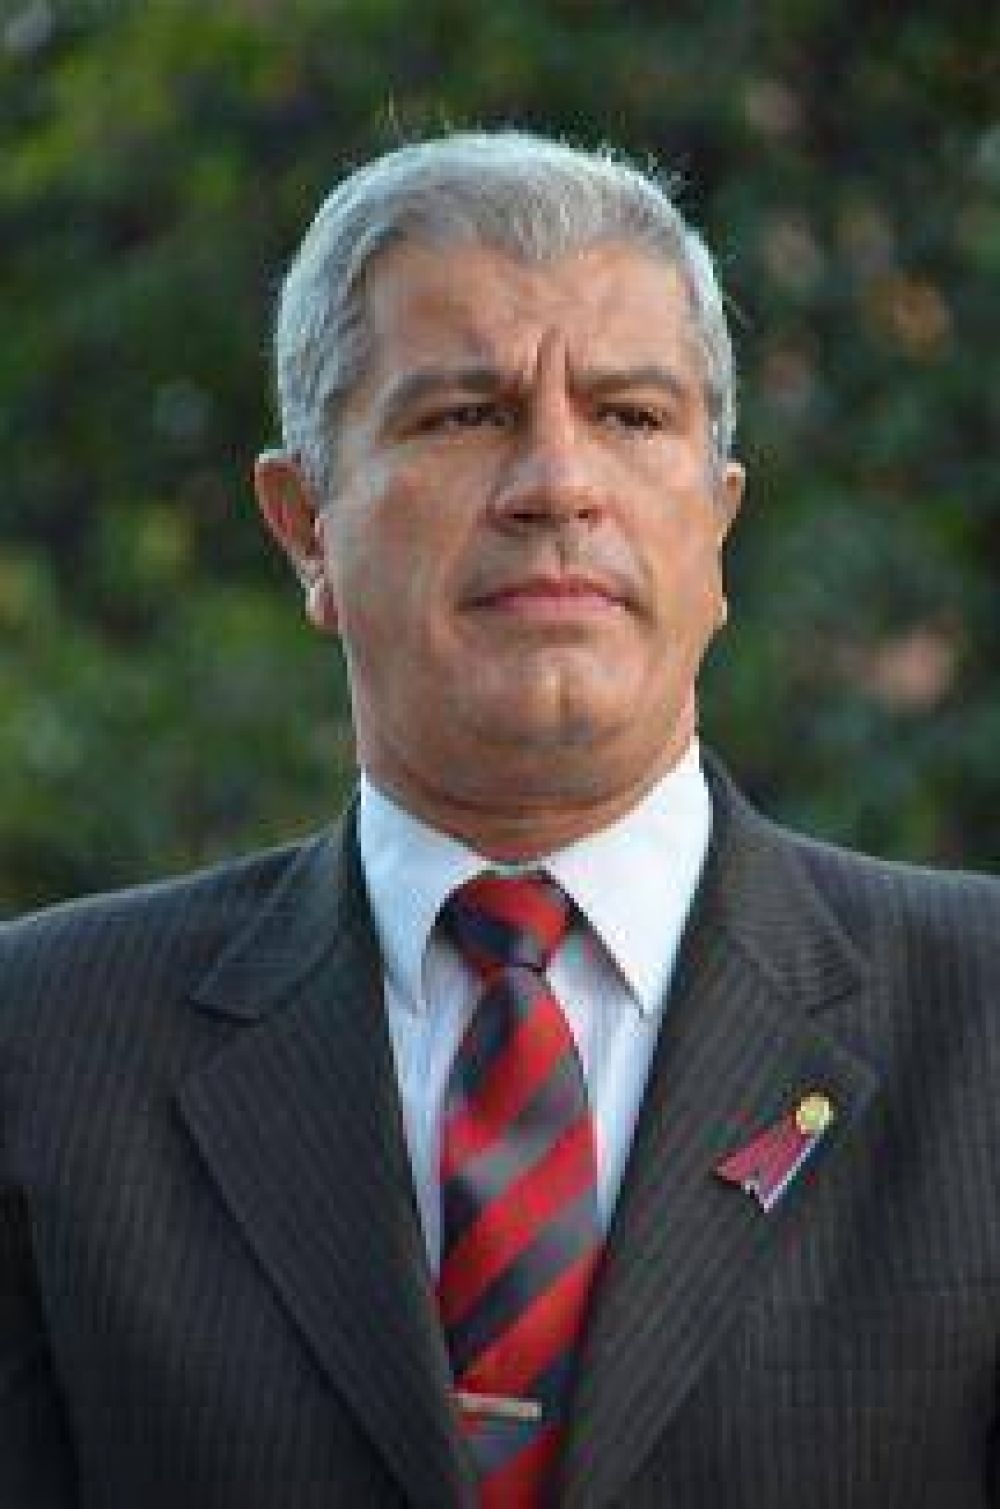 El Vicegobernador de Salta encabez el acto del 9 de Julio y aniversario de Campo Quijano